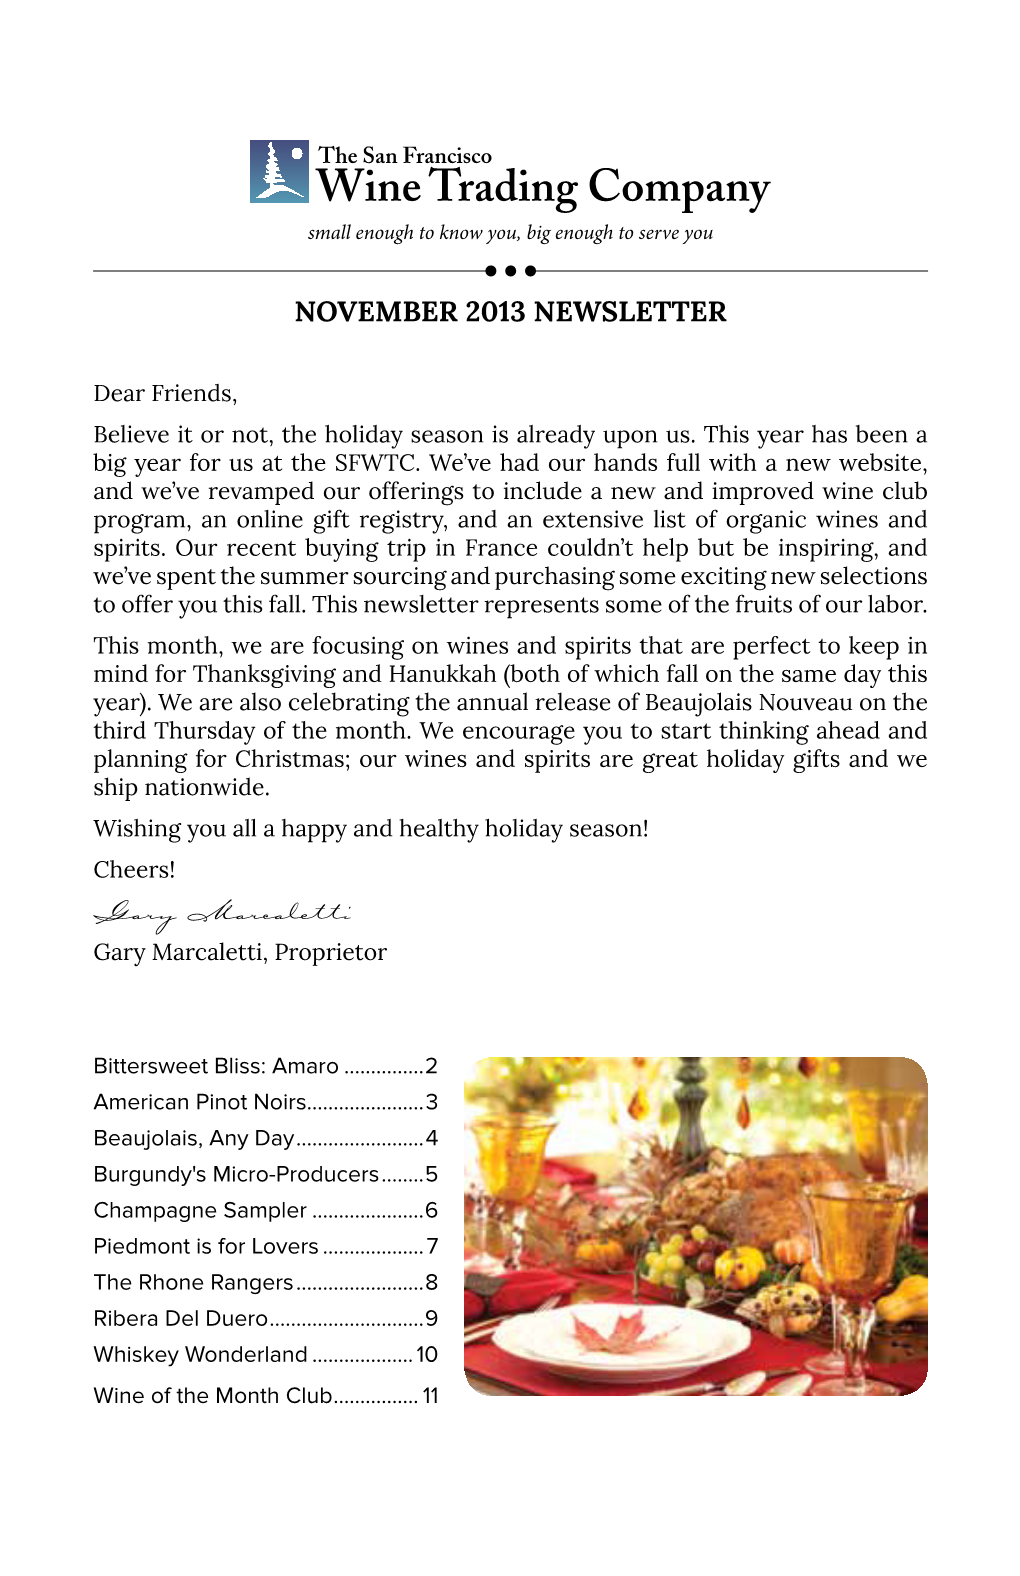 SFWTC's November 2013 Newsletter